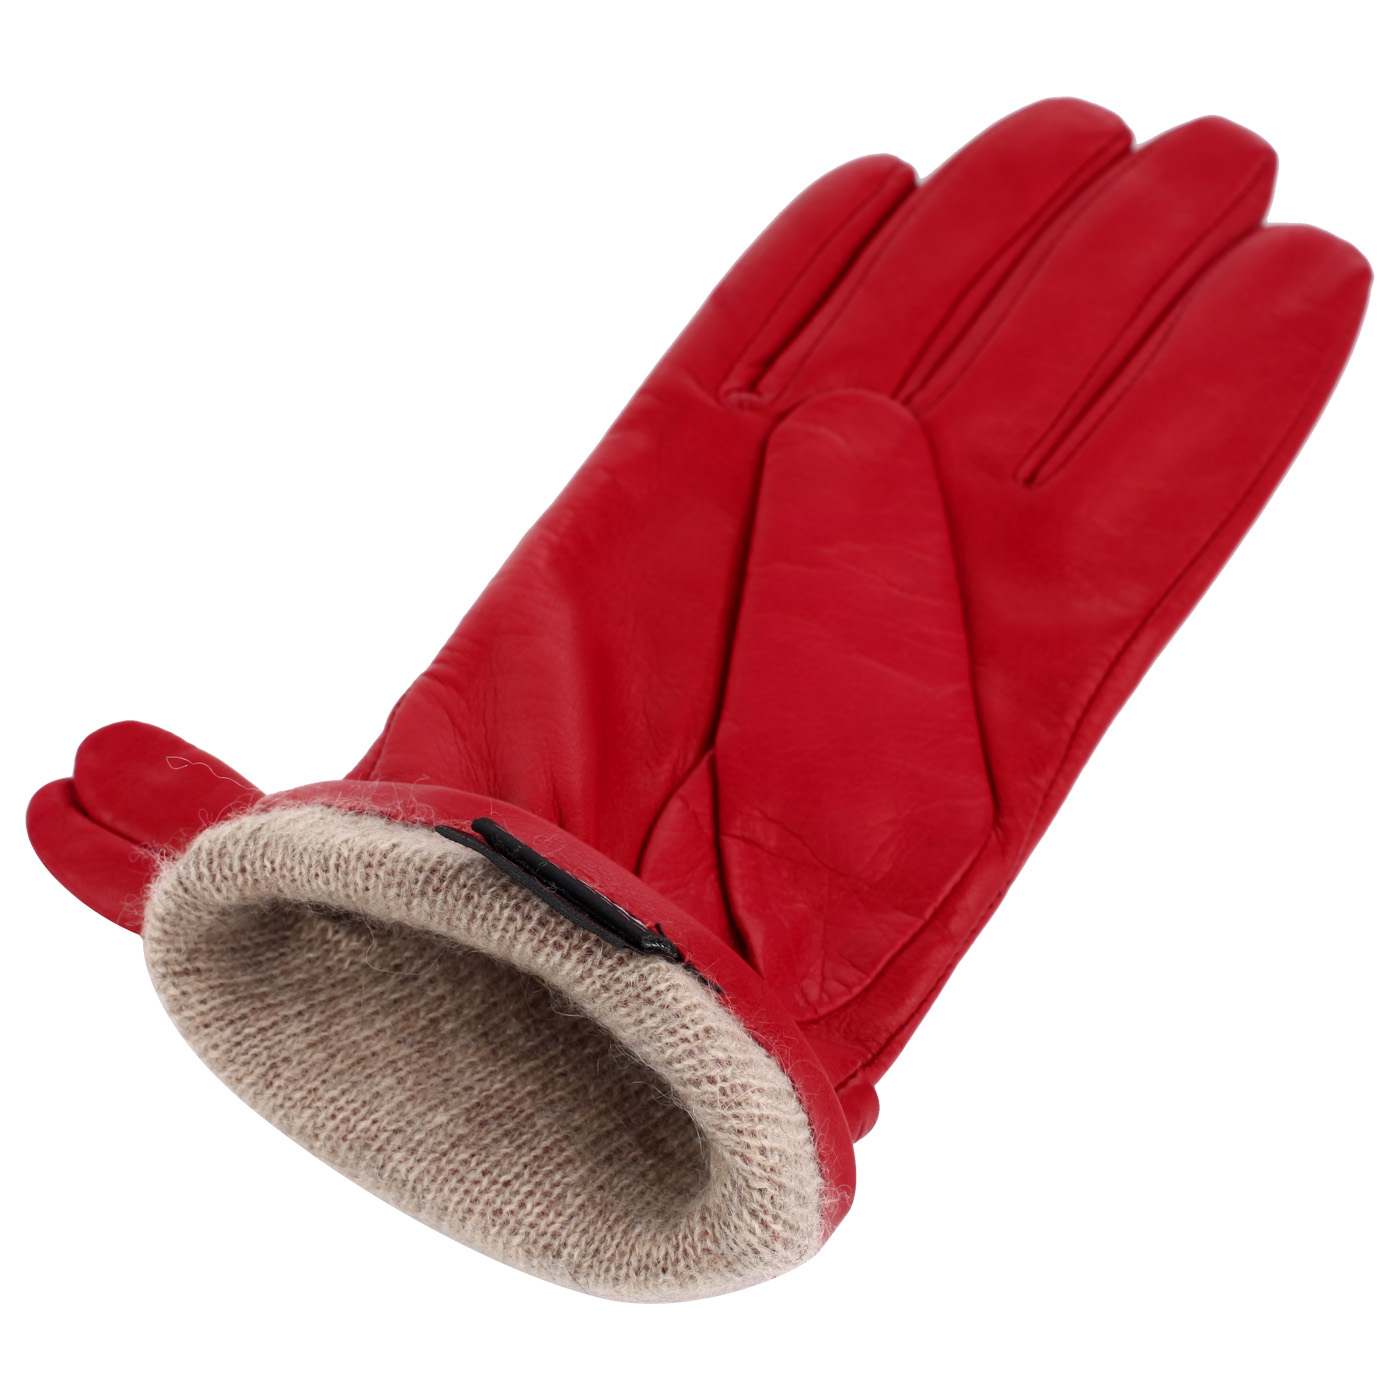 Красные перчатки Dal Dosso 